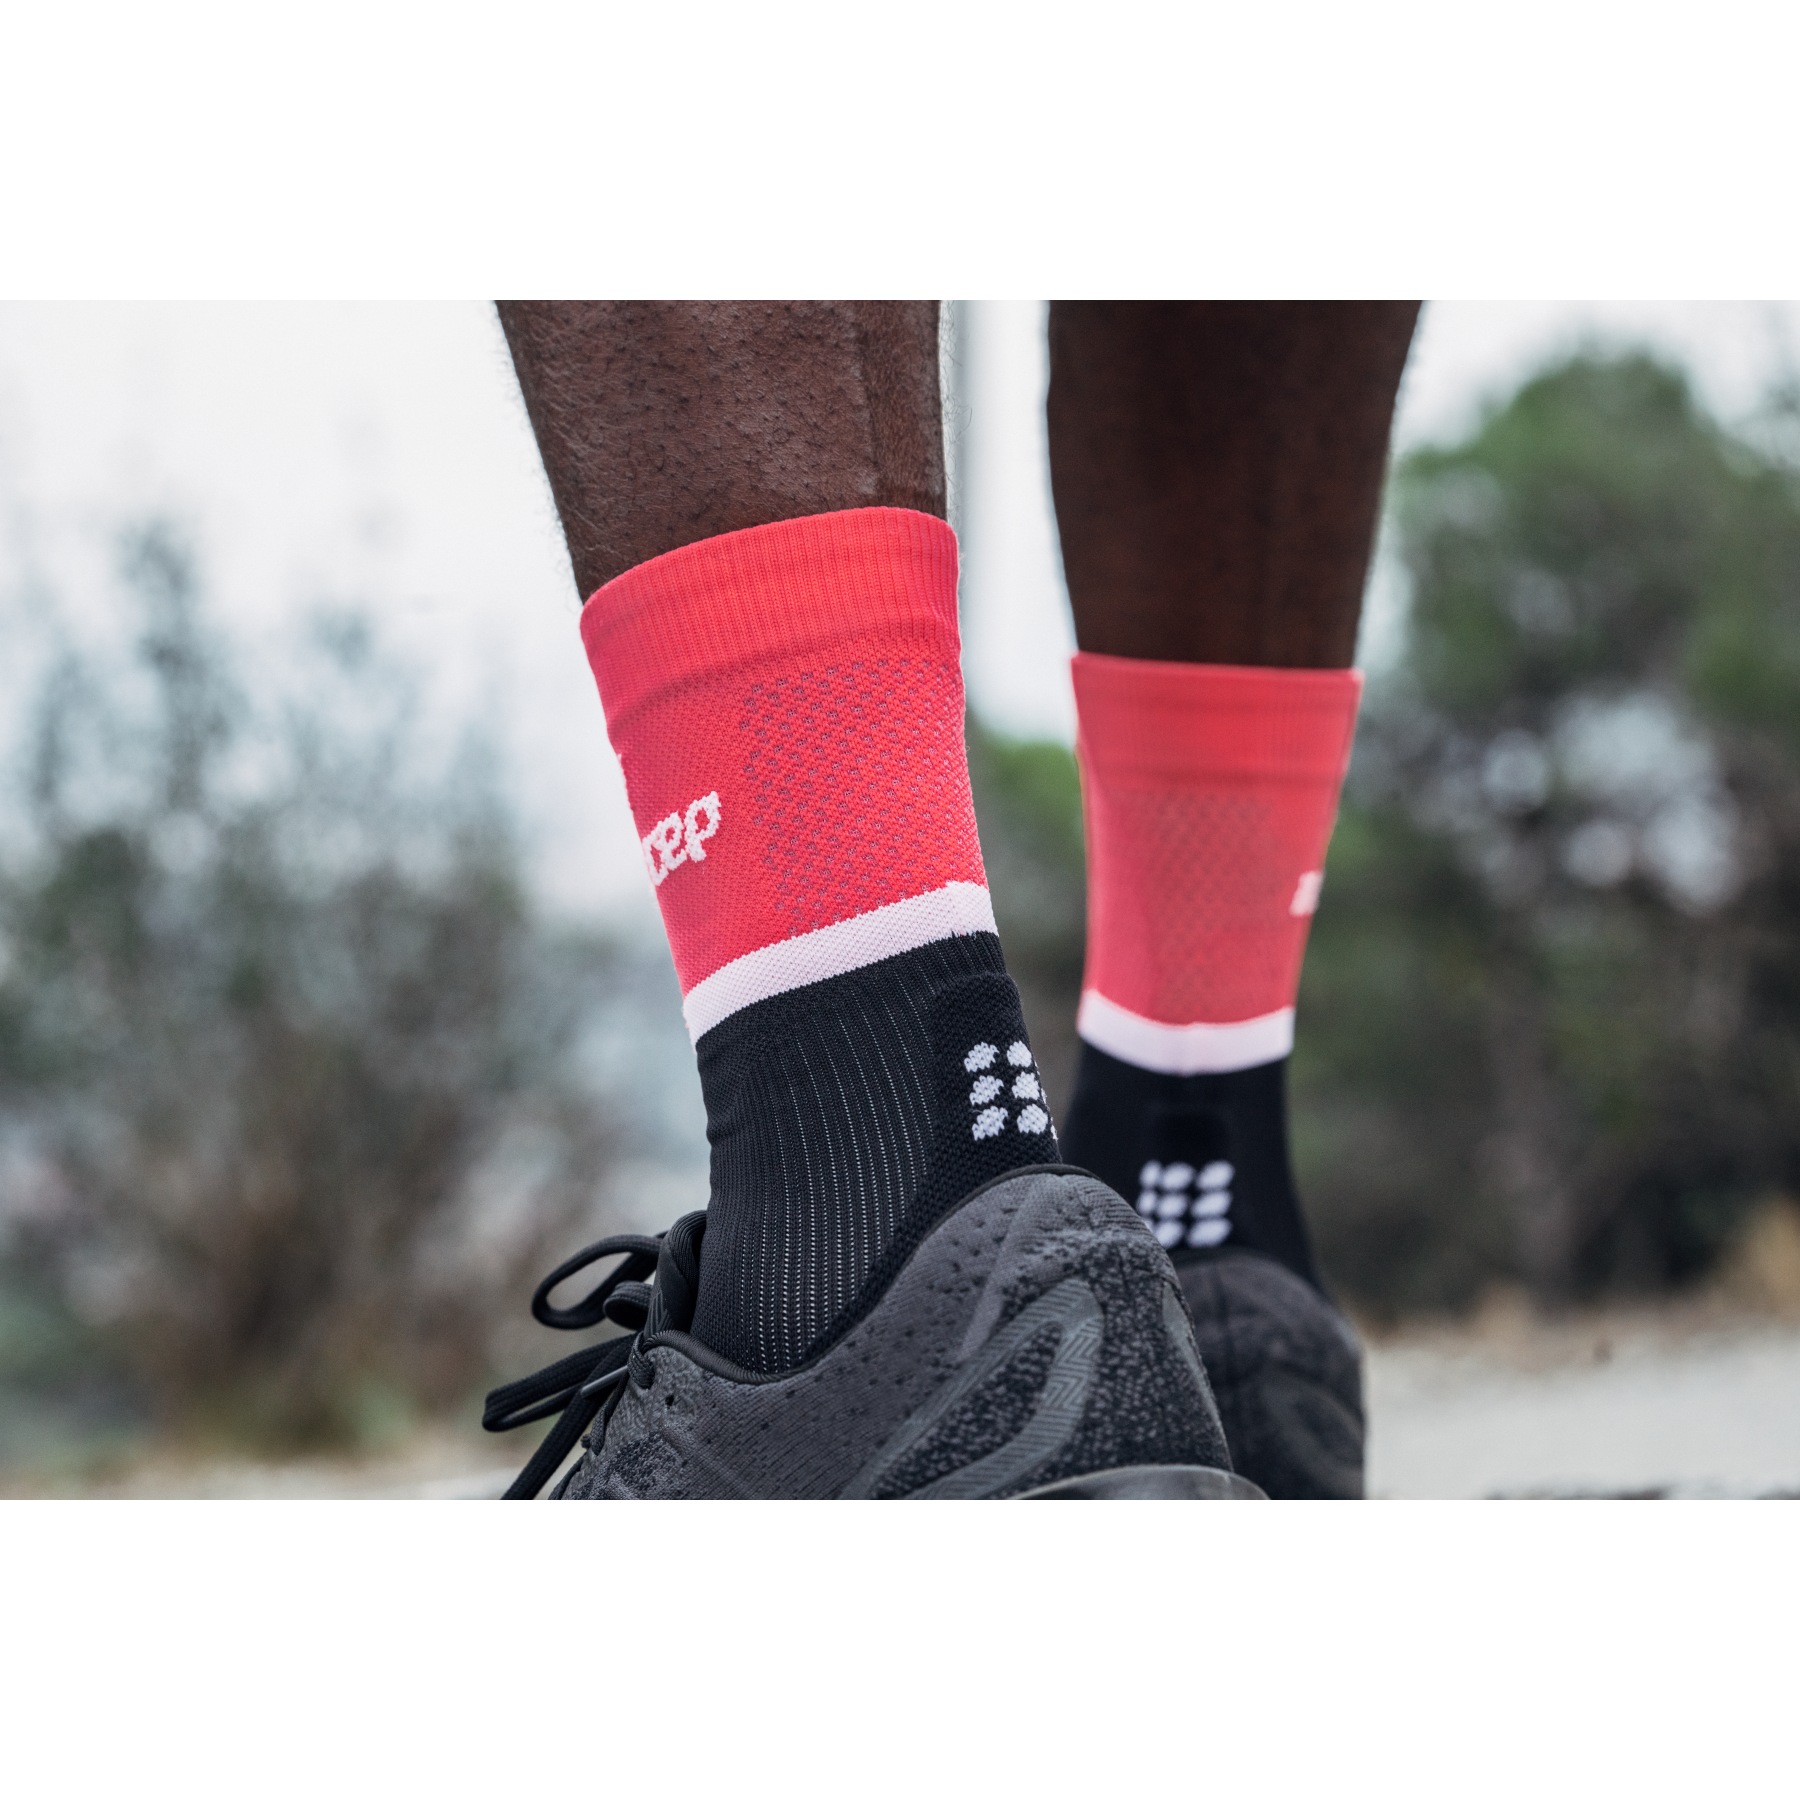 Women's The Run Compression Mid Cut Socks 4.0 - Pink/Black